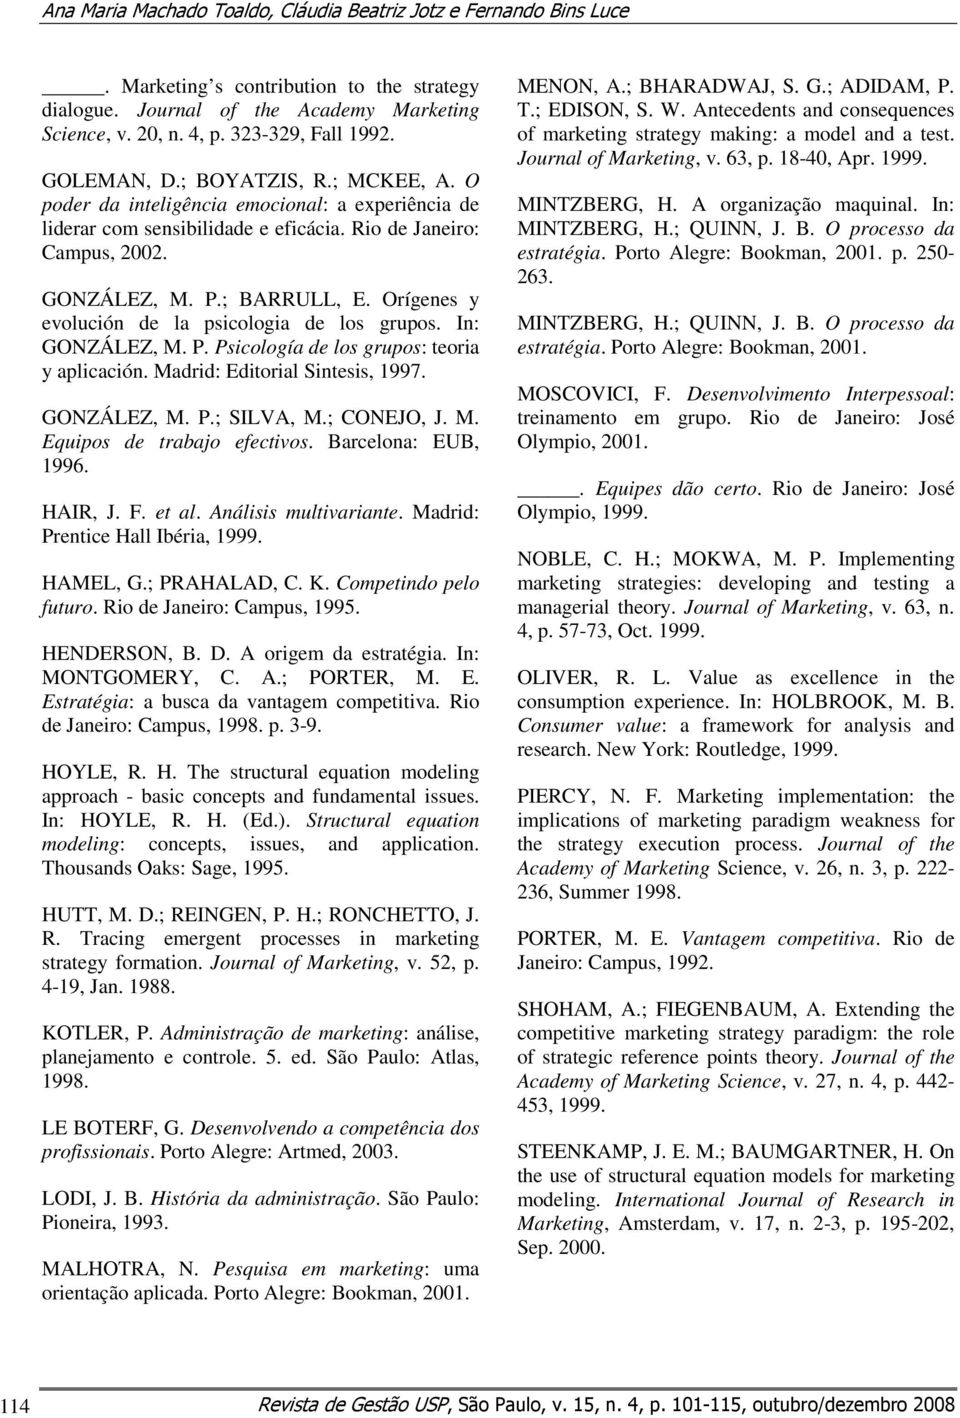 Orígenes y evolución de la psicologia de los grupos. In: GONZÁLEZ, M. P. Psicología de los grupos: teoria y aplicación. Madrid: Editorial Sintesis, 1997. GONZÁLEZ, M. P.; SILVA, M.; CONEJO, J. M. Equipos de trabajo efectivos.